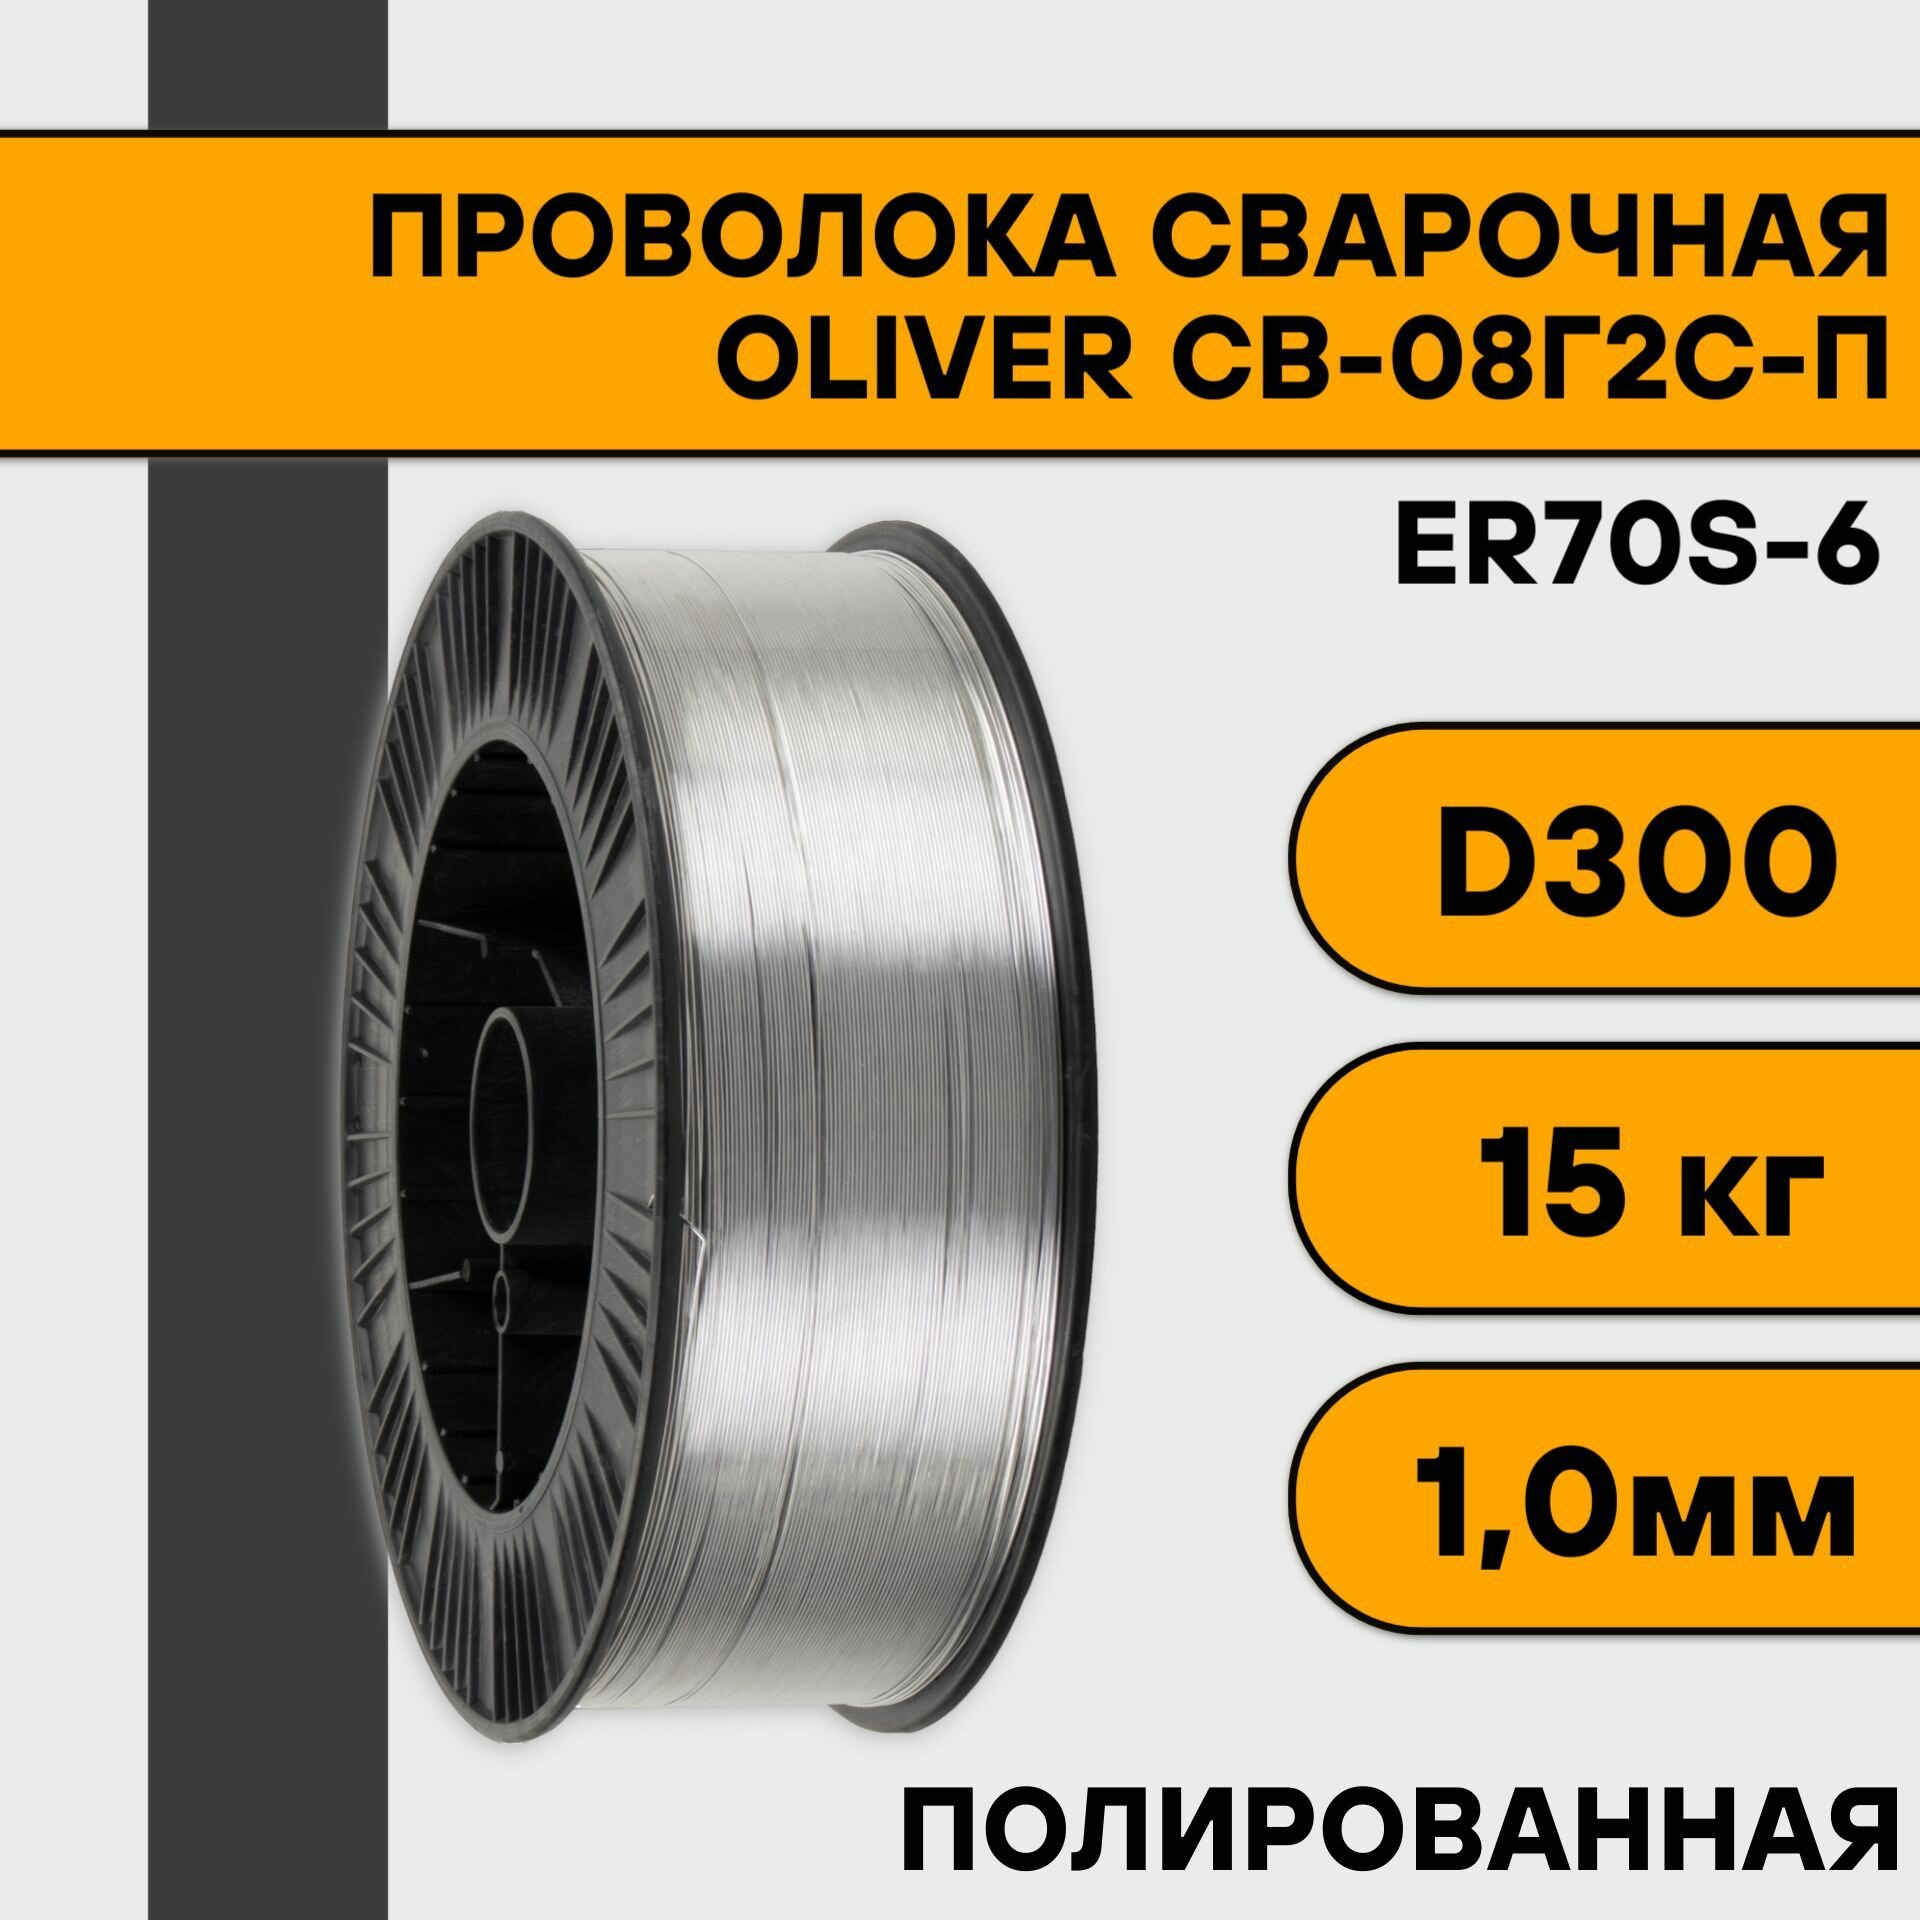 Проволока сварочная СВ-08Г2С-П/ER70S-6 ф 12 мм (15 кг) BS-300 кассета OLIVER (полированная)